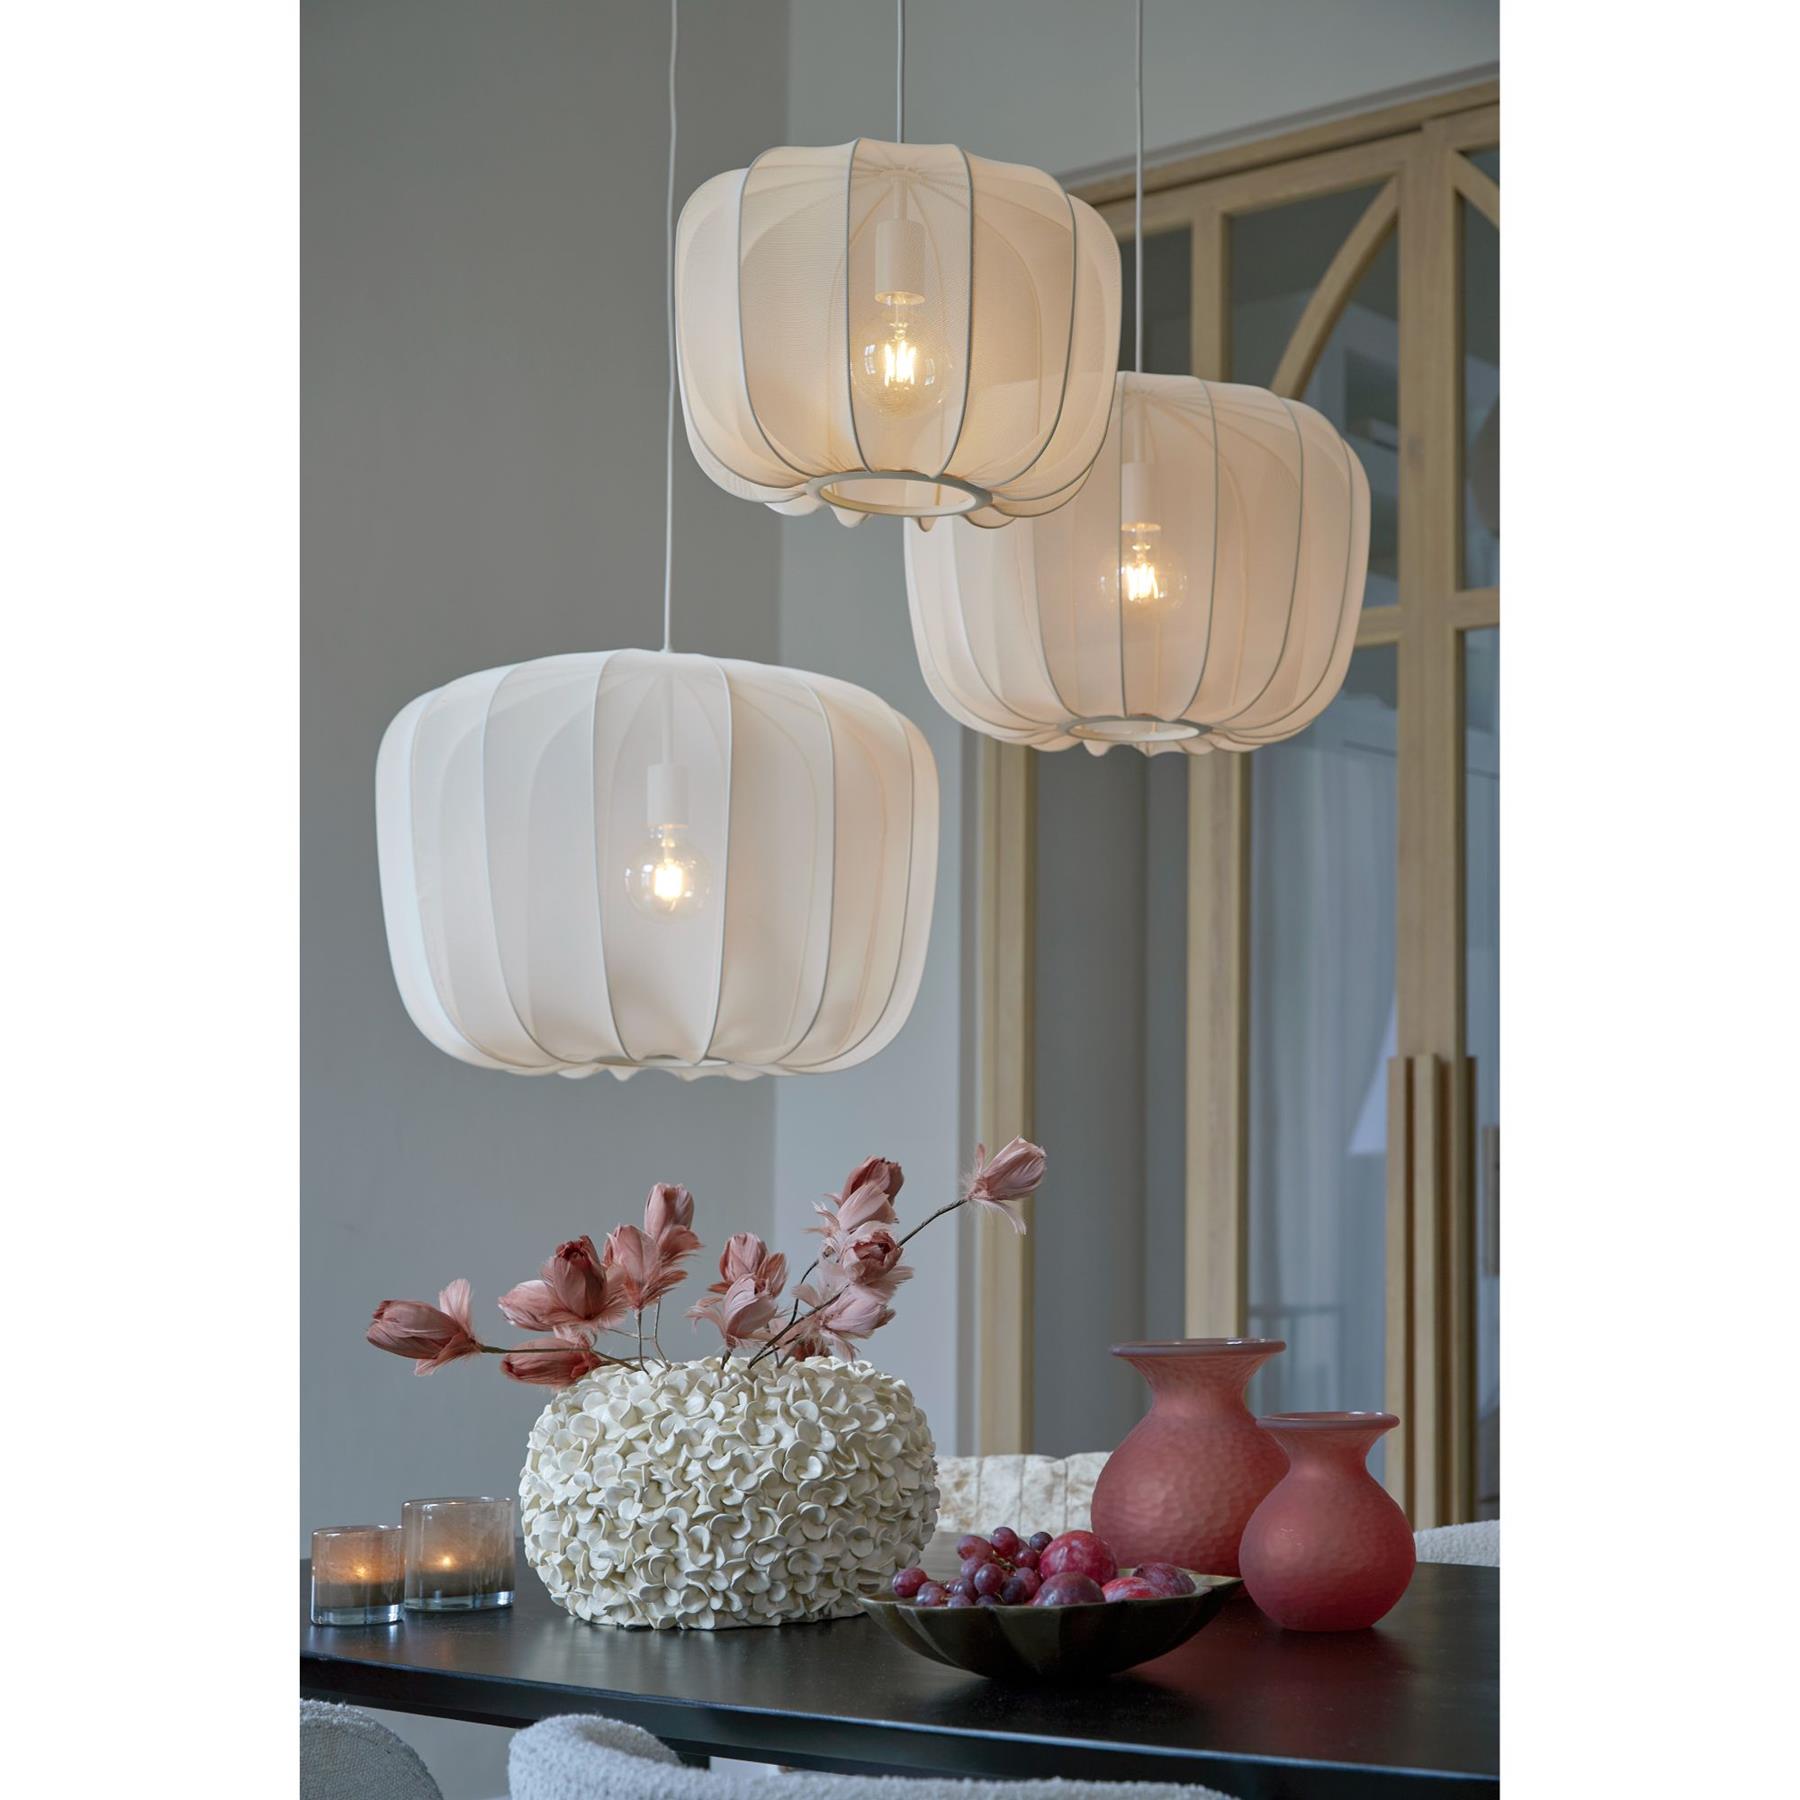 & Living Hanglamp Plumeria Zand - Ø40cm kopen? Shop bij